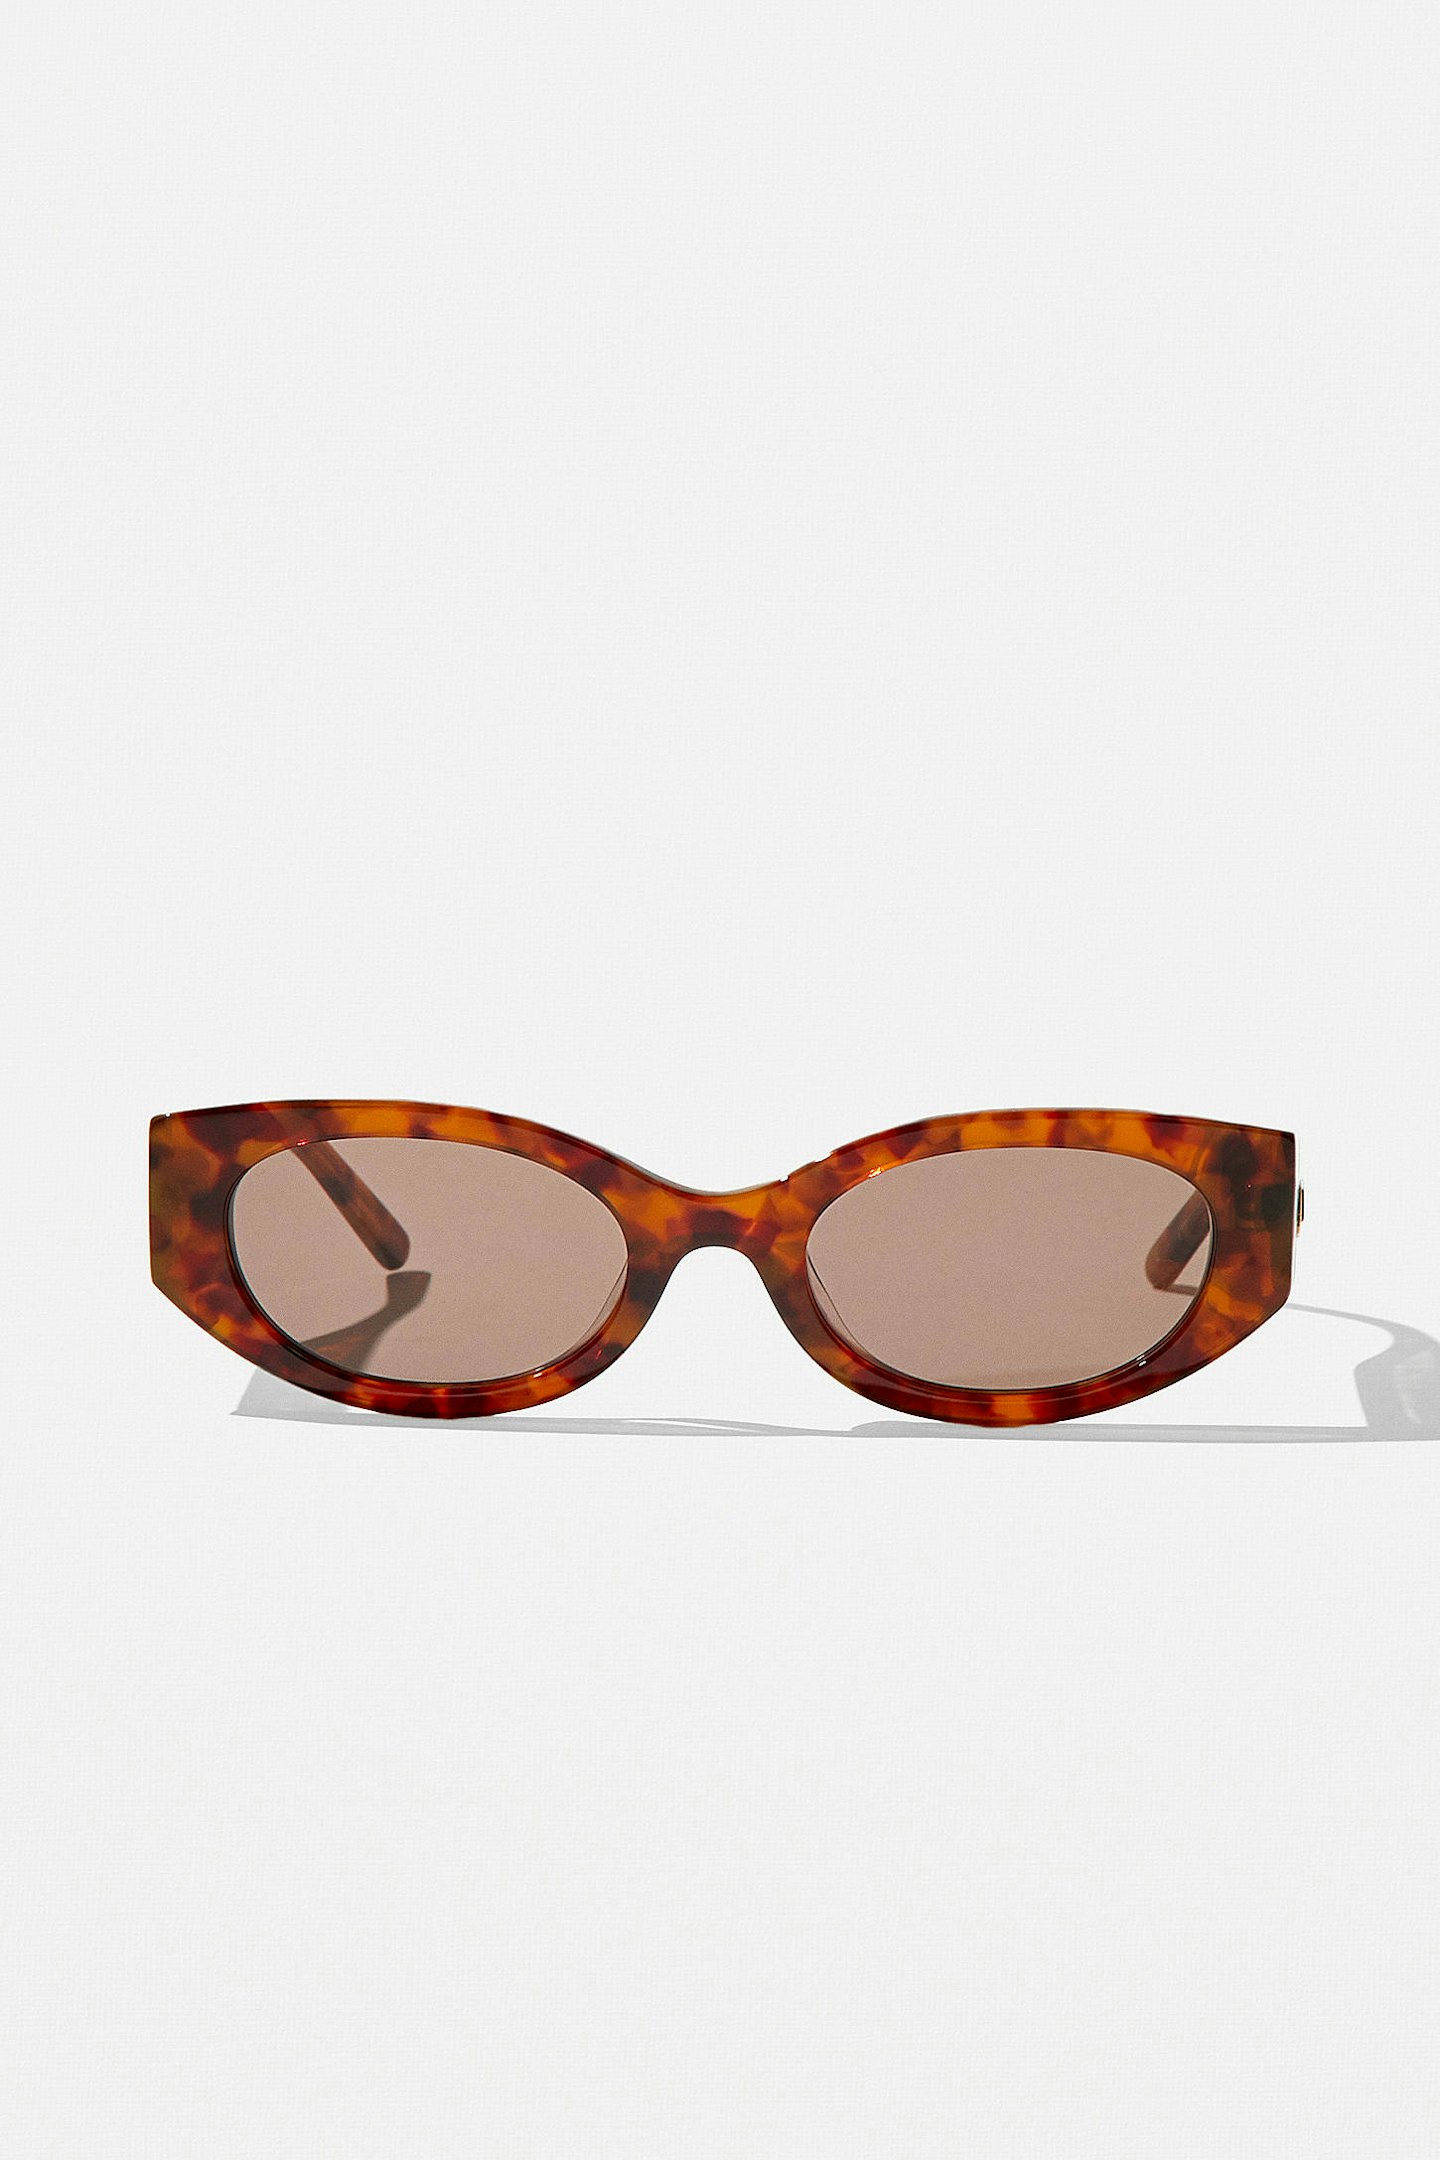 Hot Futures, Sunglasses, £85